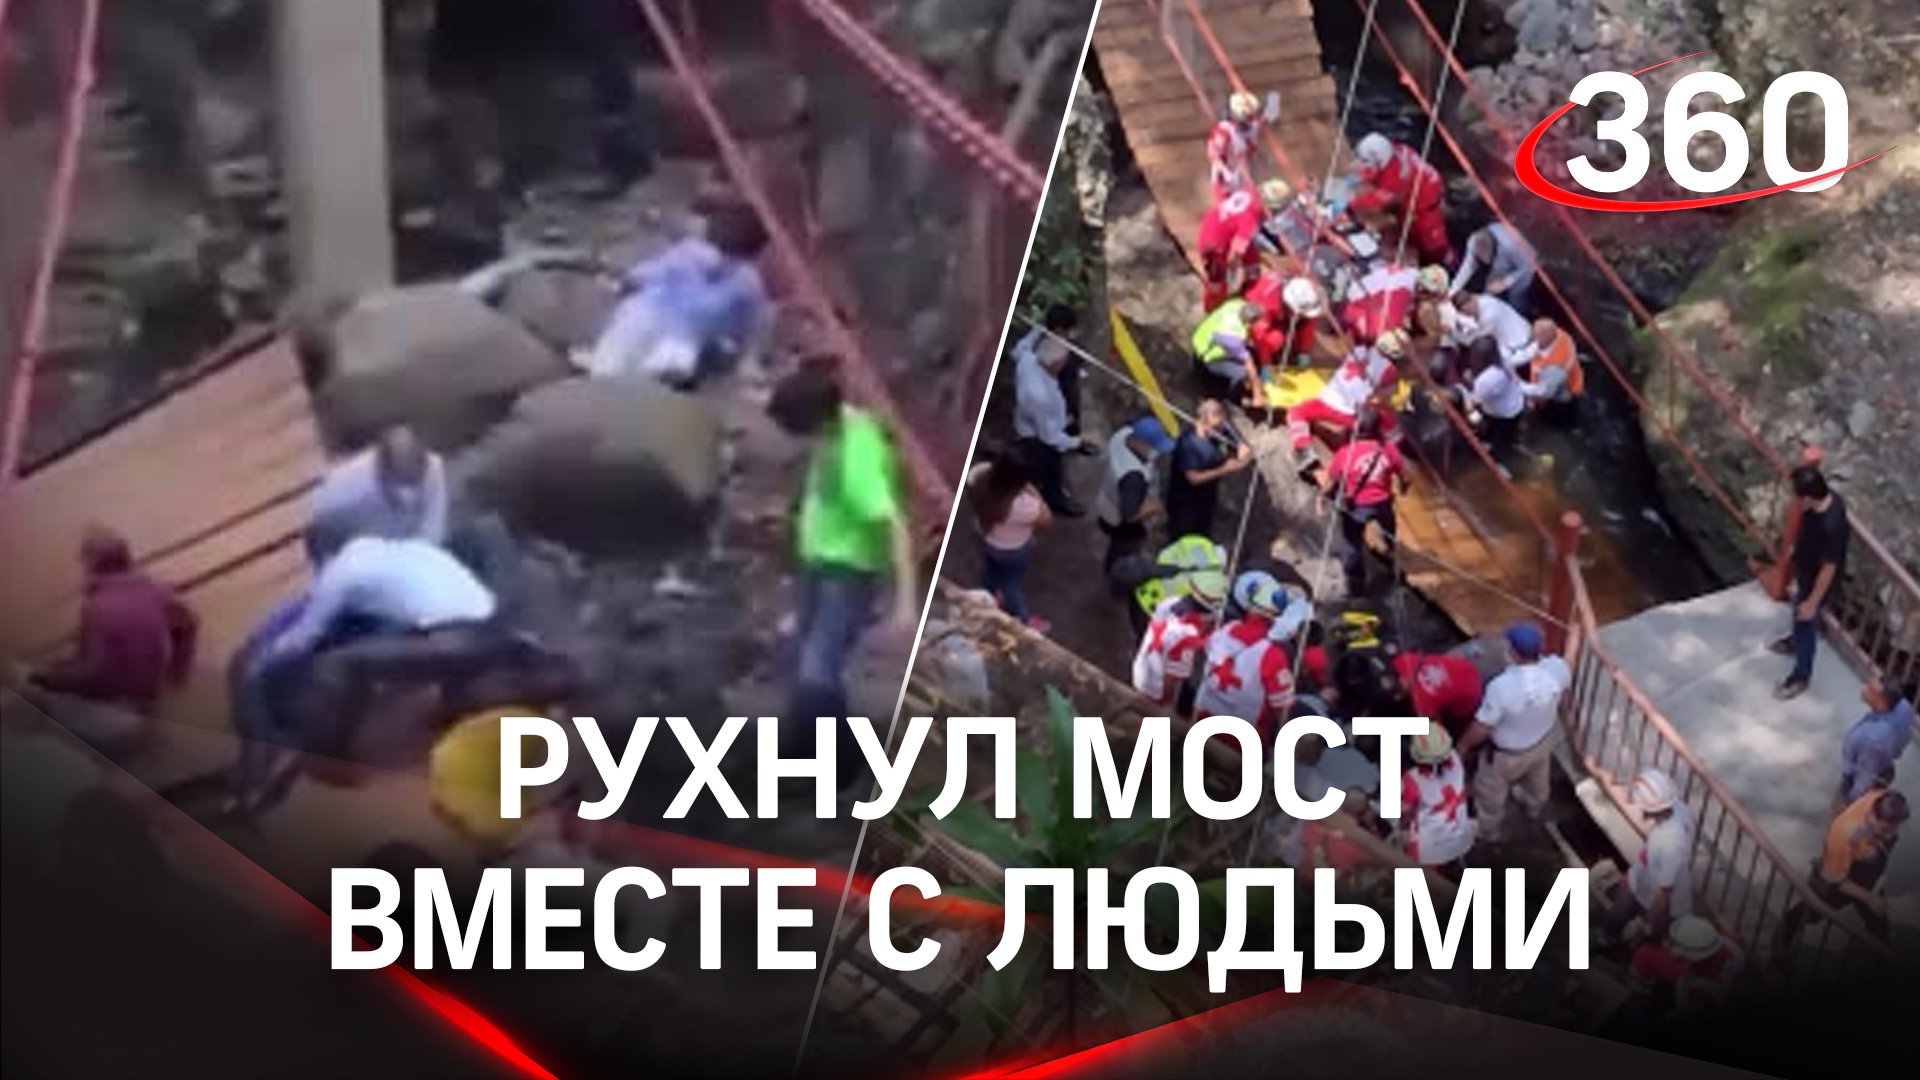 Мостовой дебют провален: мост рухнул на церемонии открытия